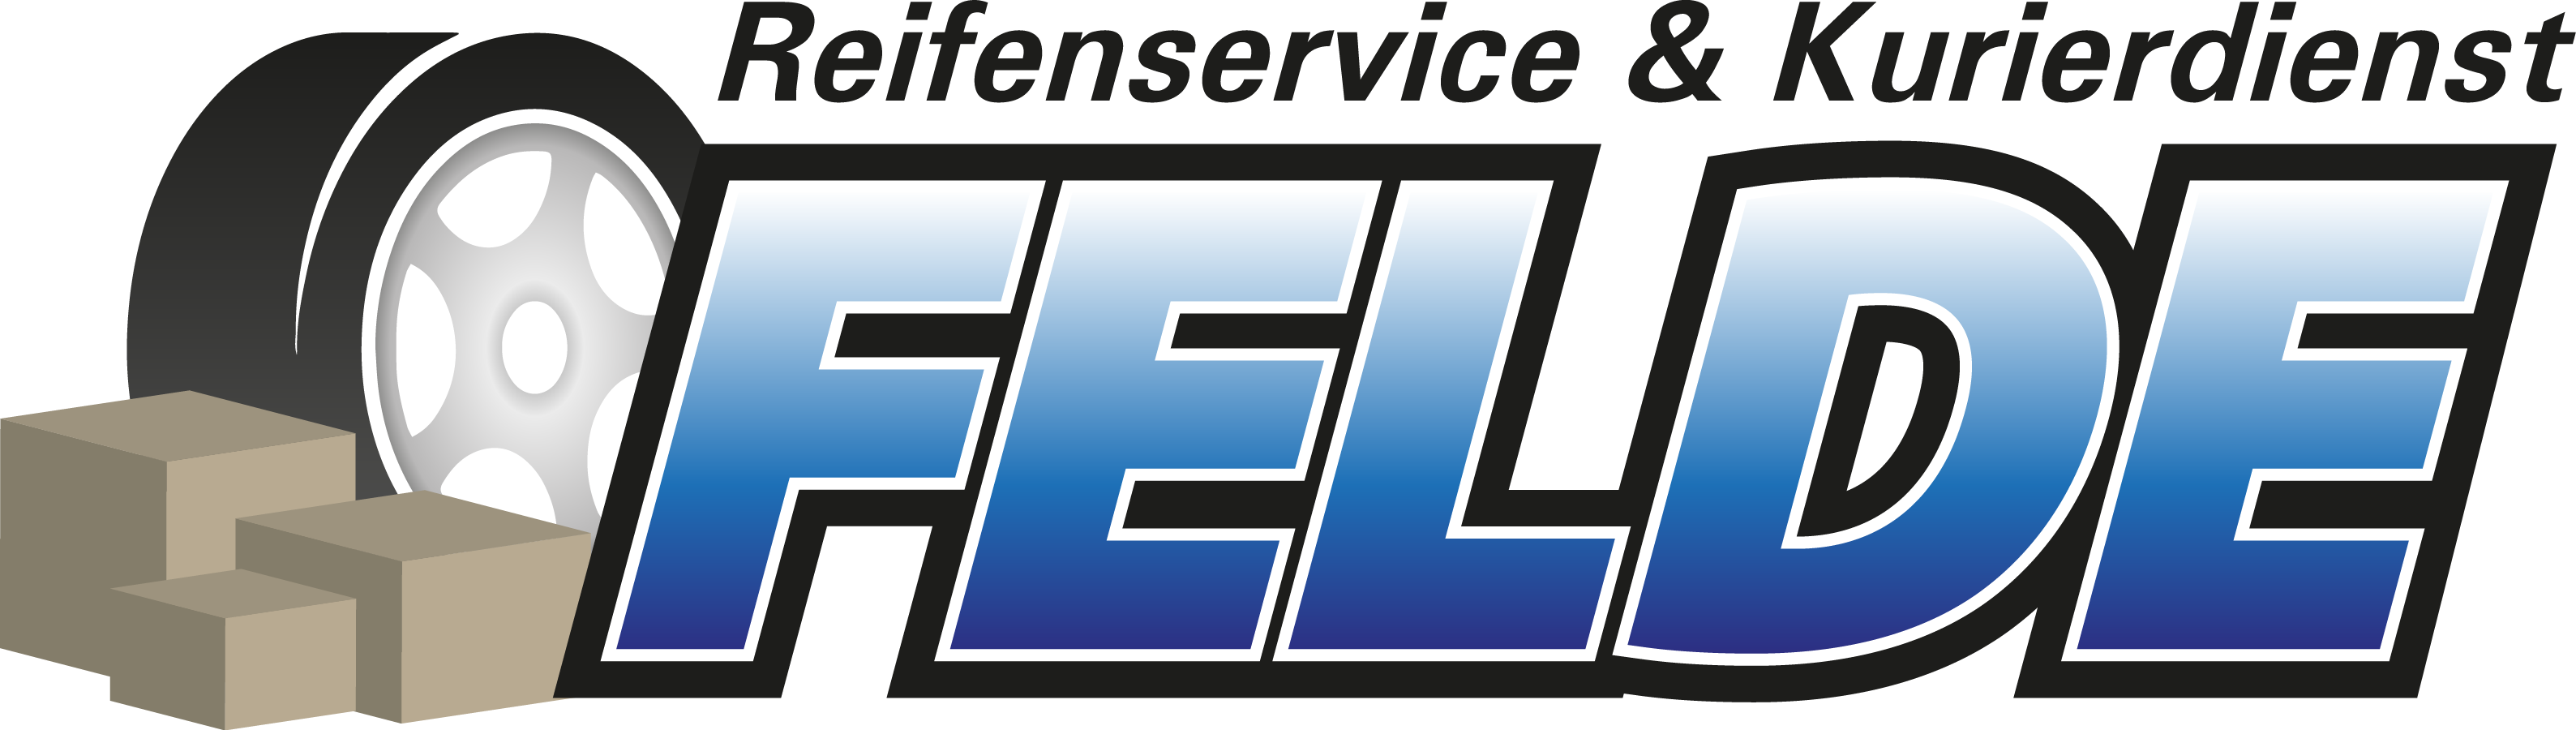 Felde_Reifenservice_Logo.png